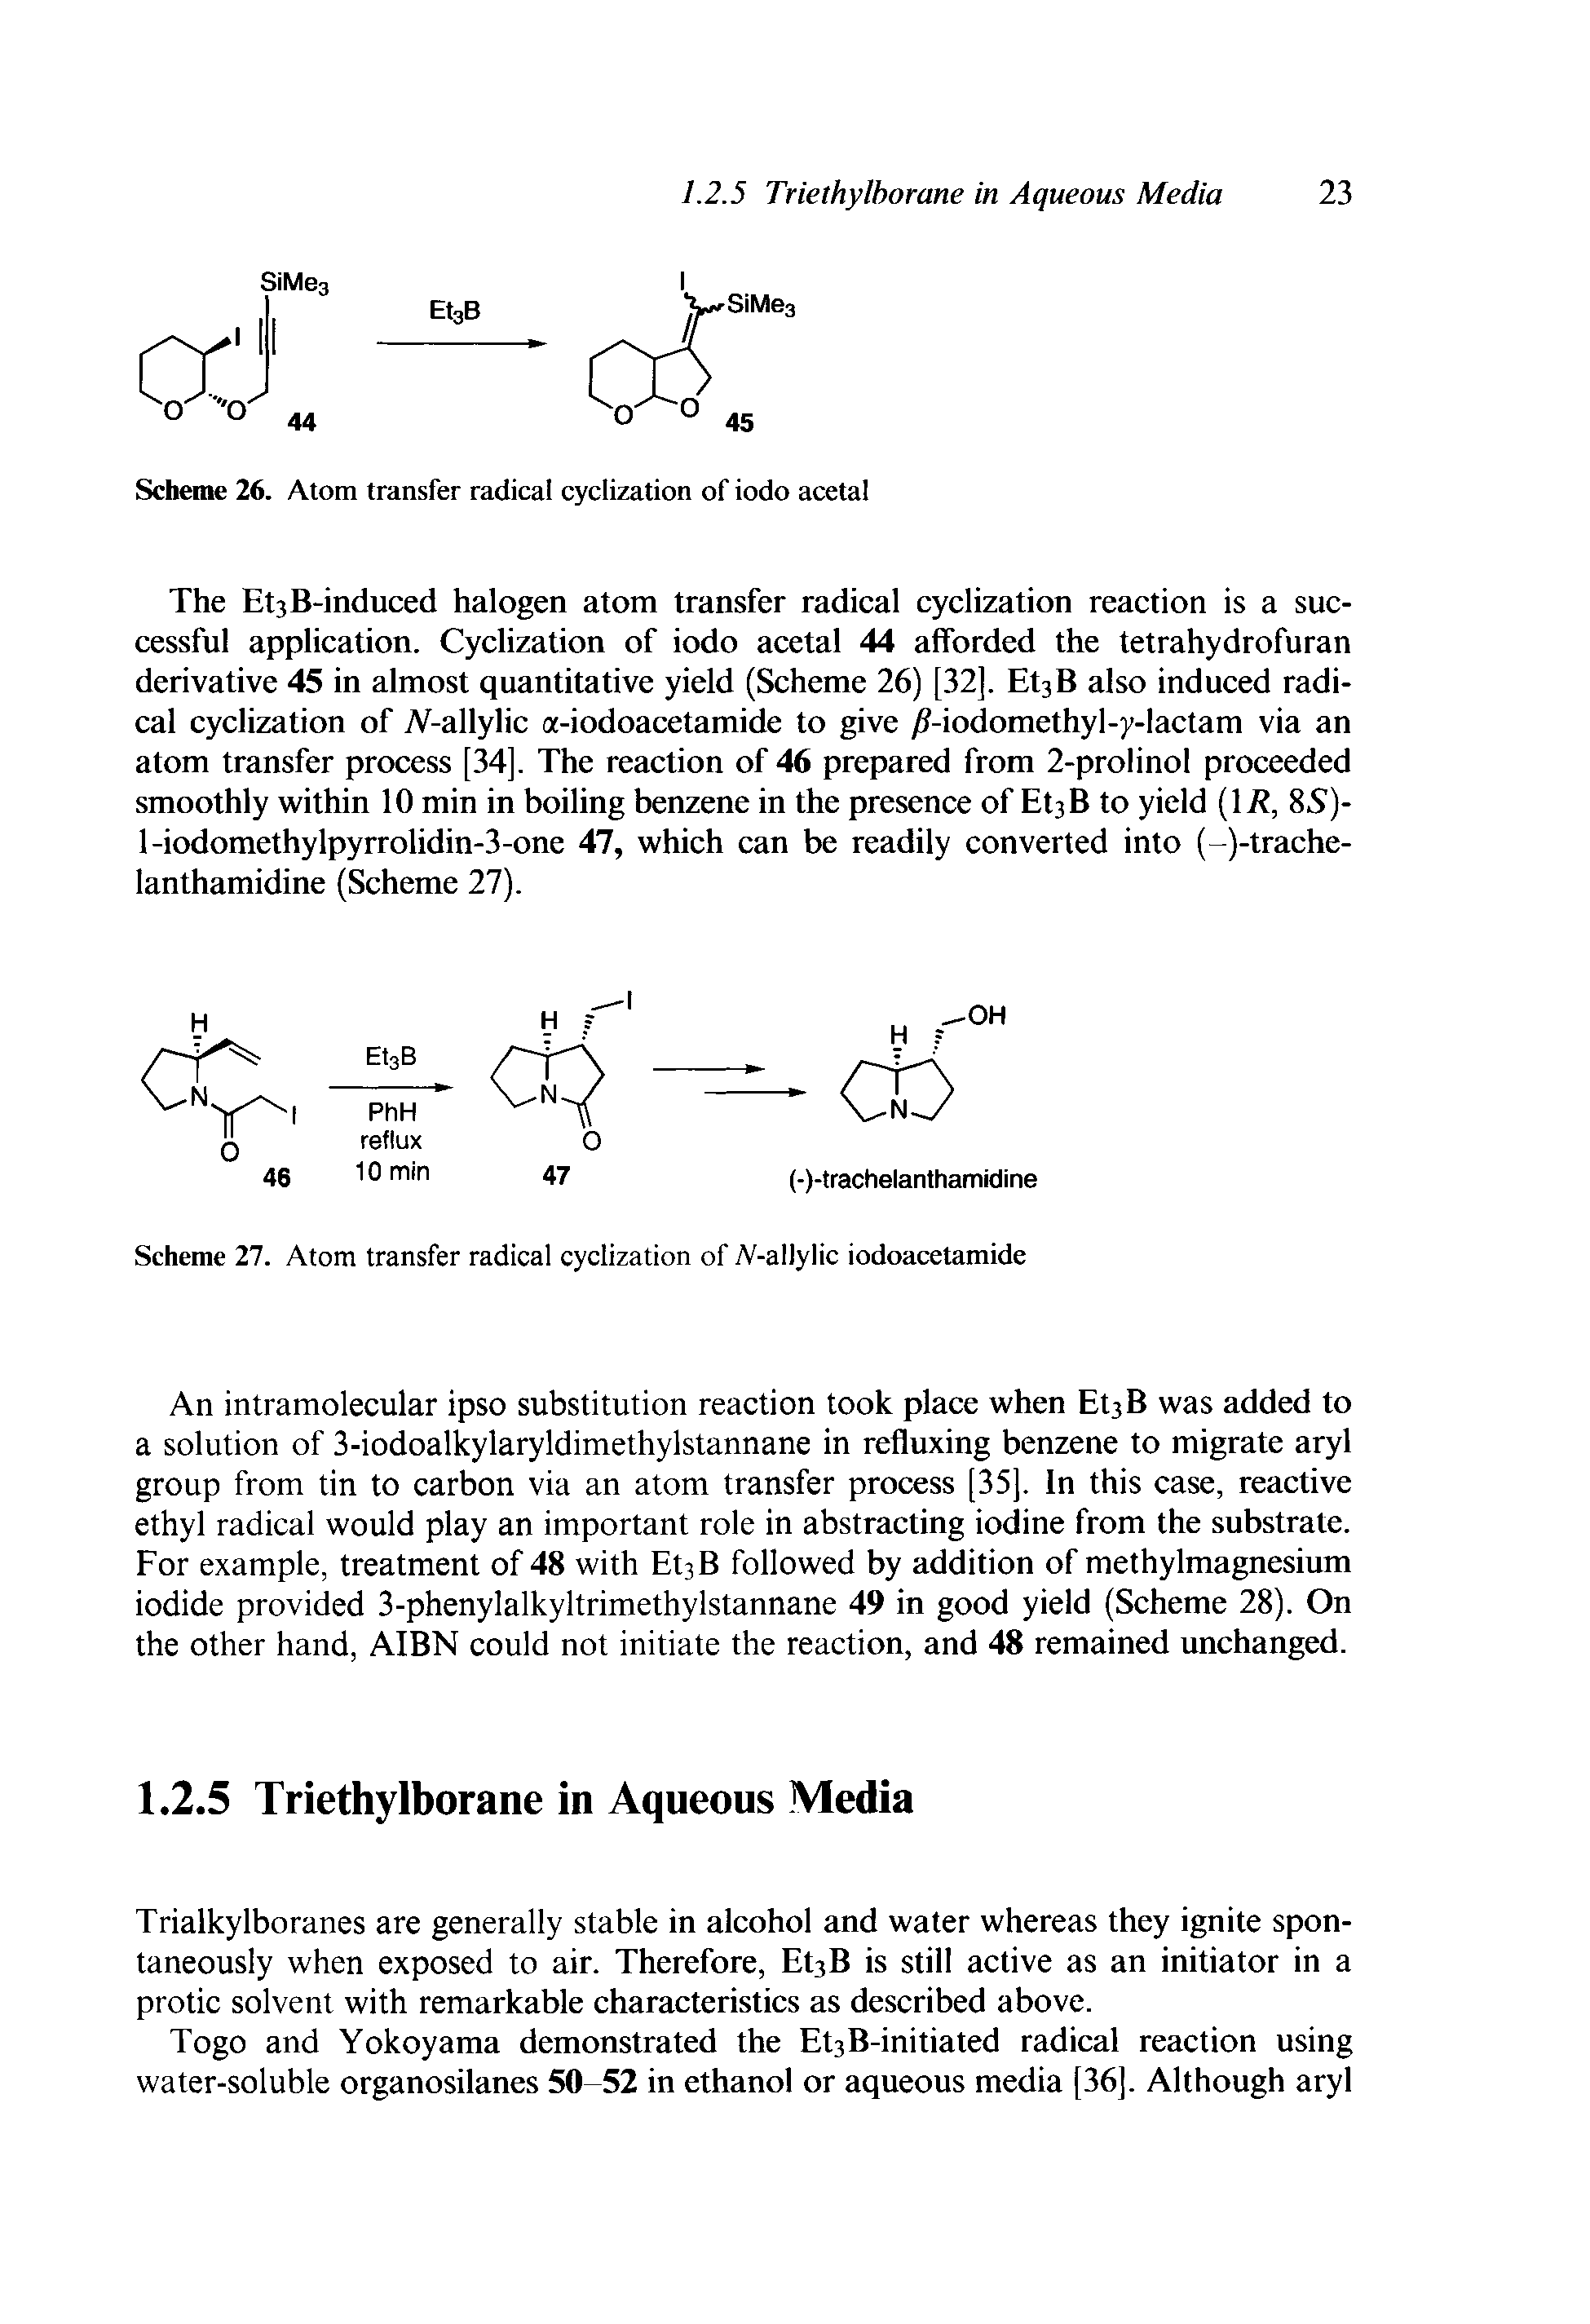 Scheme 27. Atom transfer radical cyclization of A-allylic iodoacetamide...